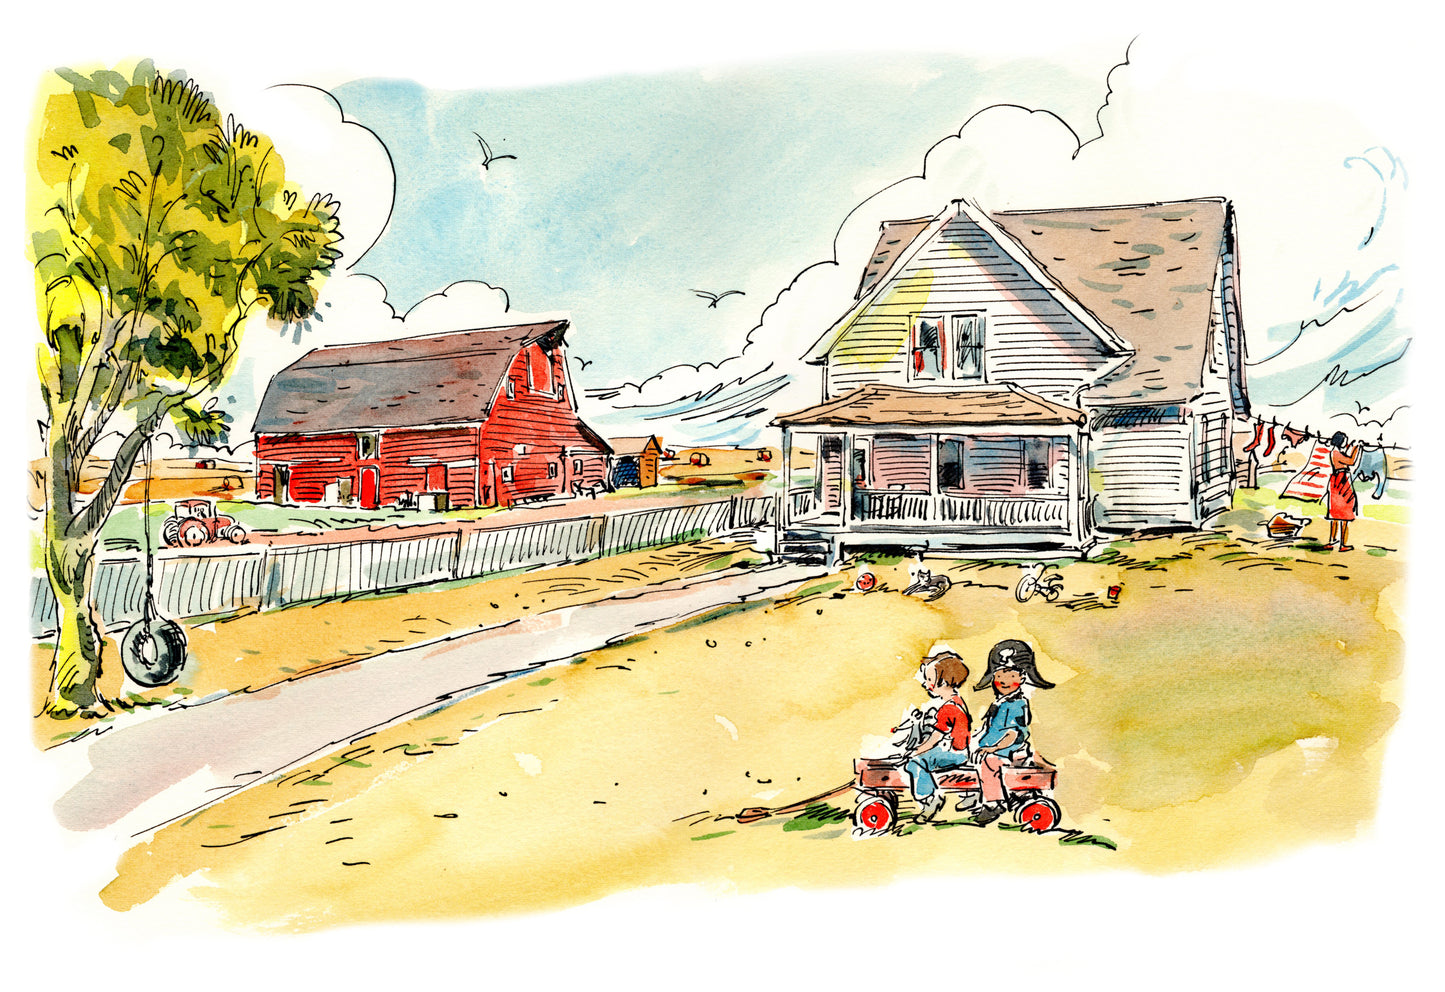 Image 102: Farmhouse